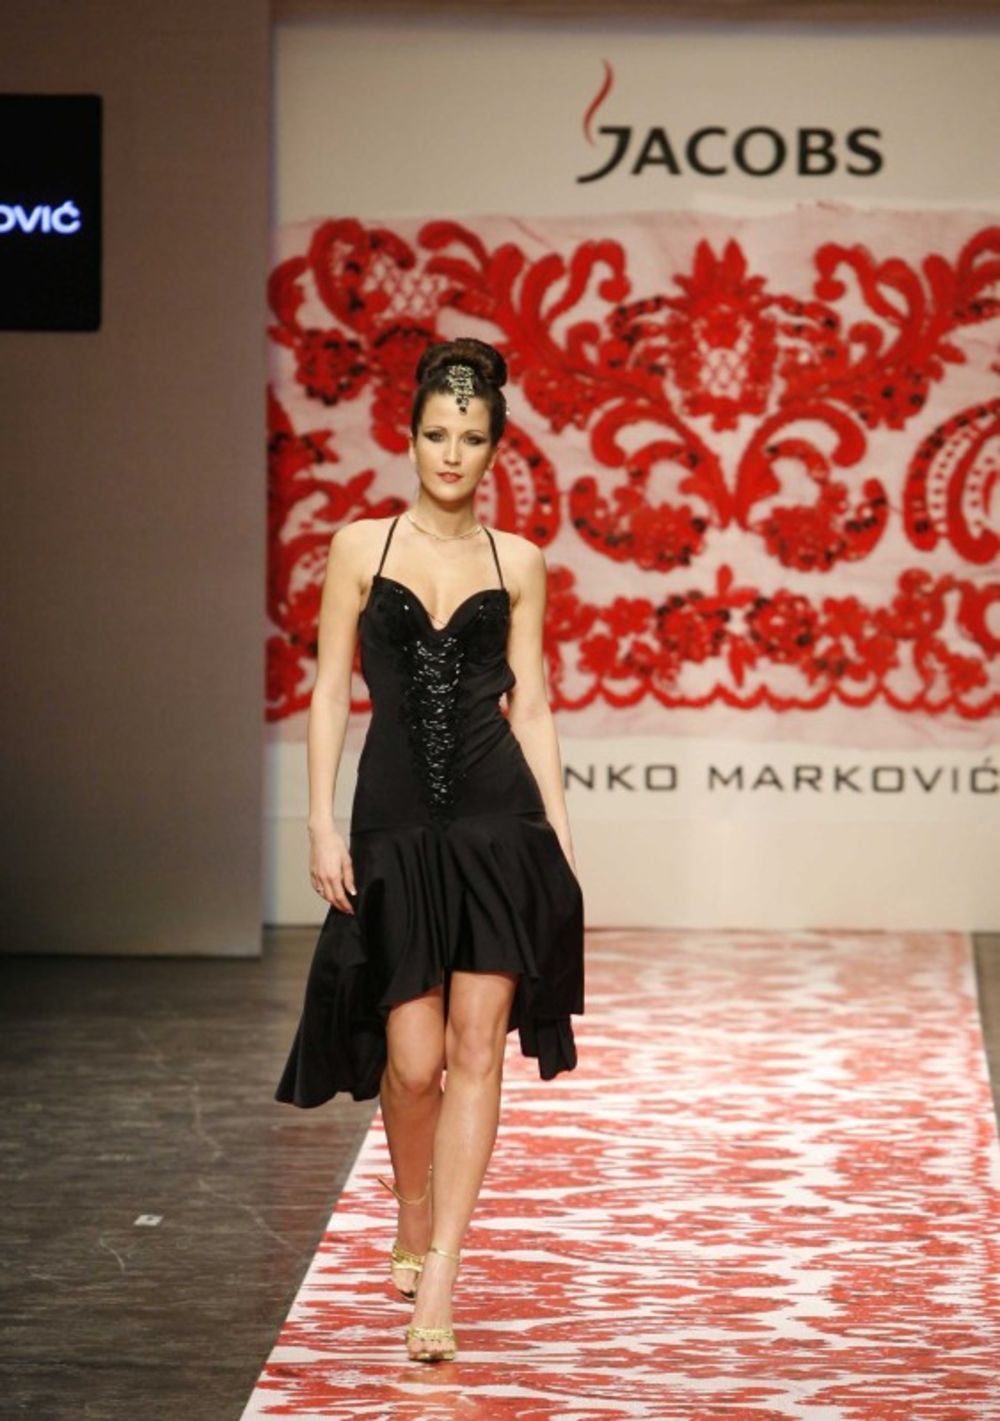 Poznati dizajner Zvonko Marković je svojom novom kolekcijom, prikazanom u teatru Madlenianum, zatvorio 16. Jacobs Fashion Selection.